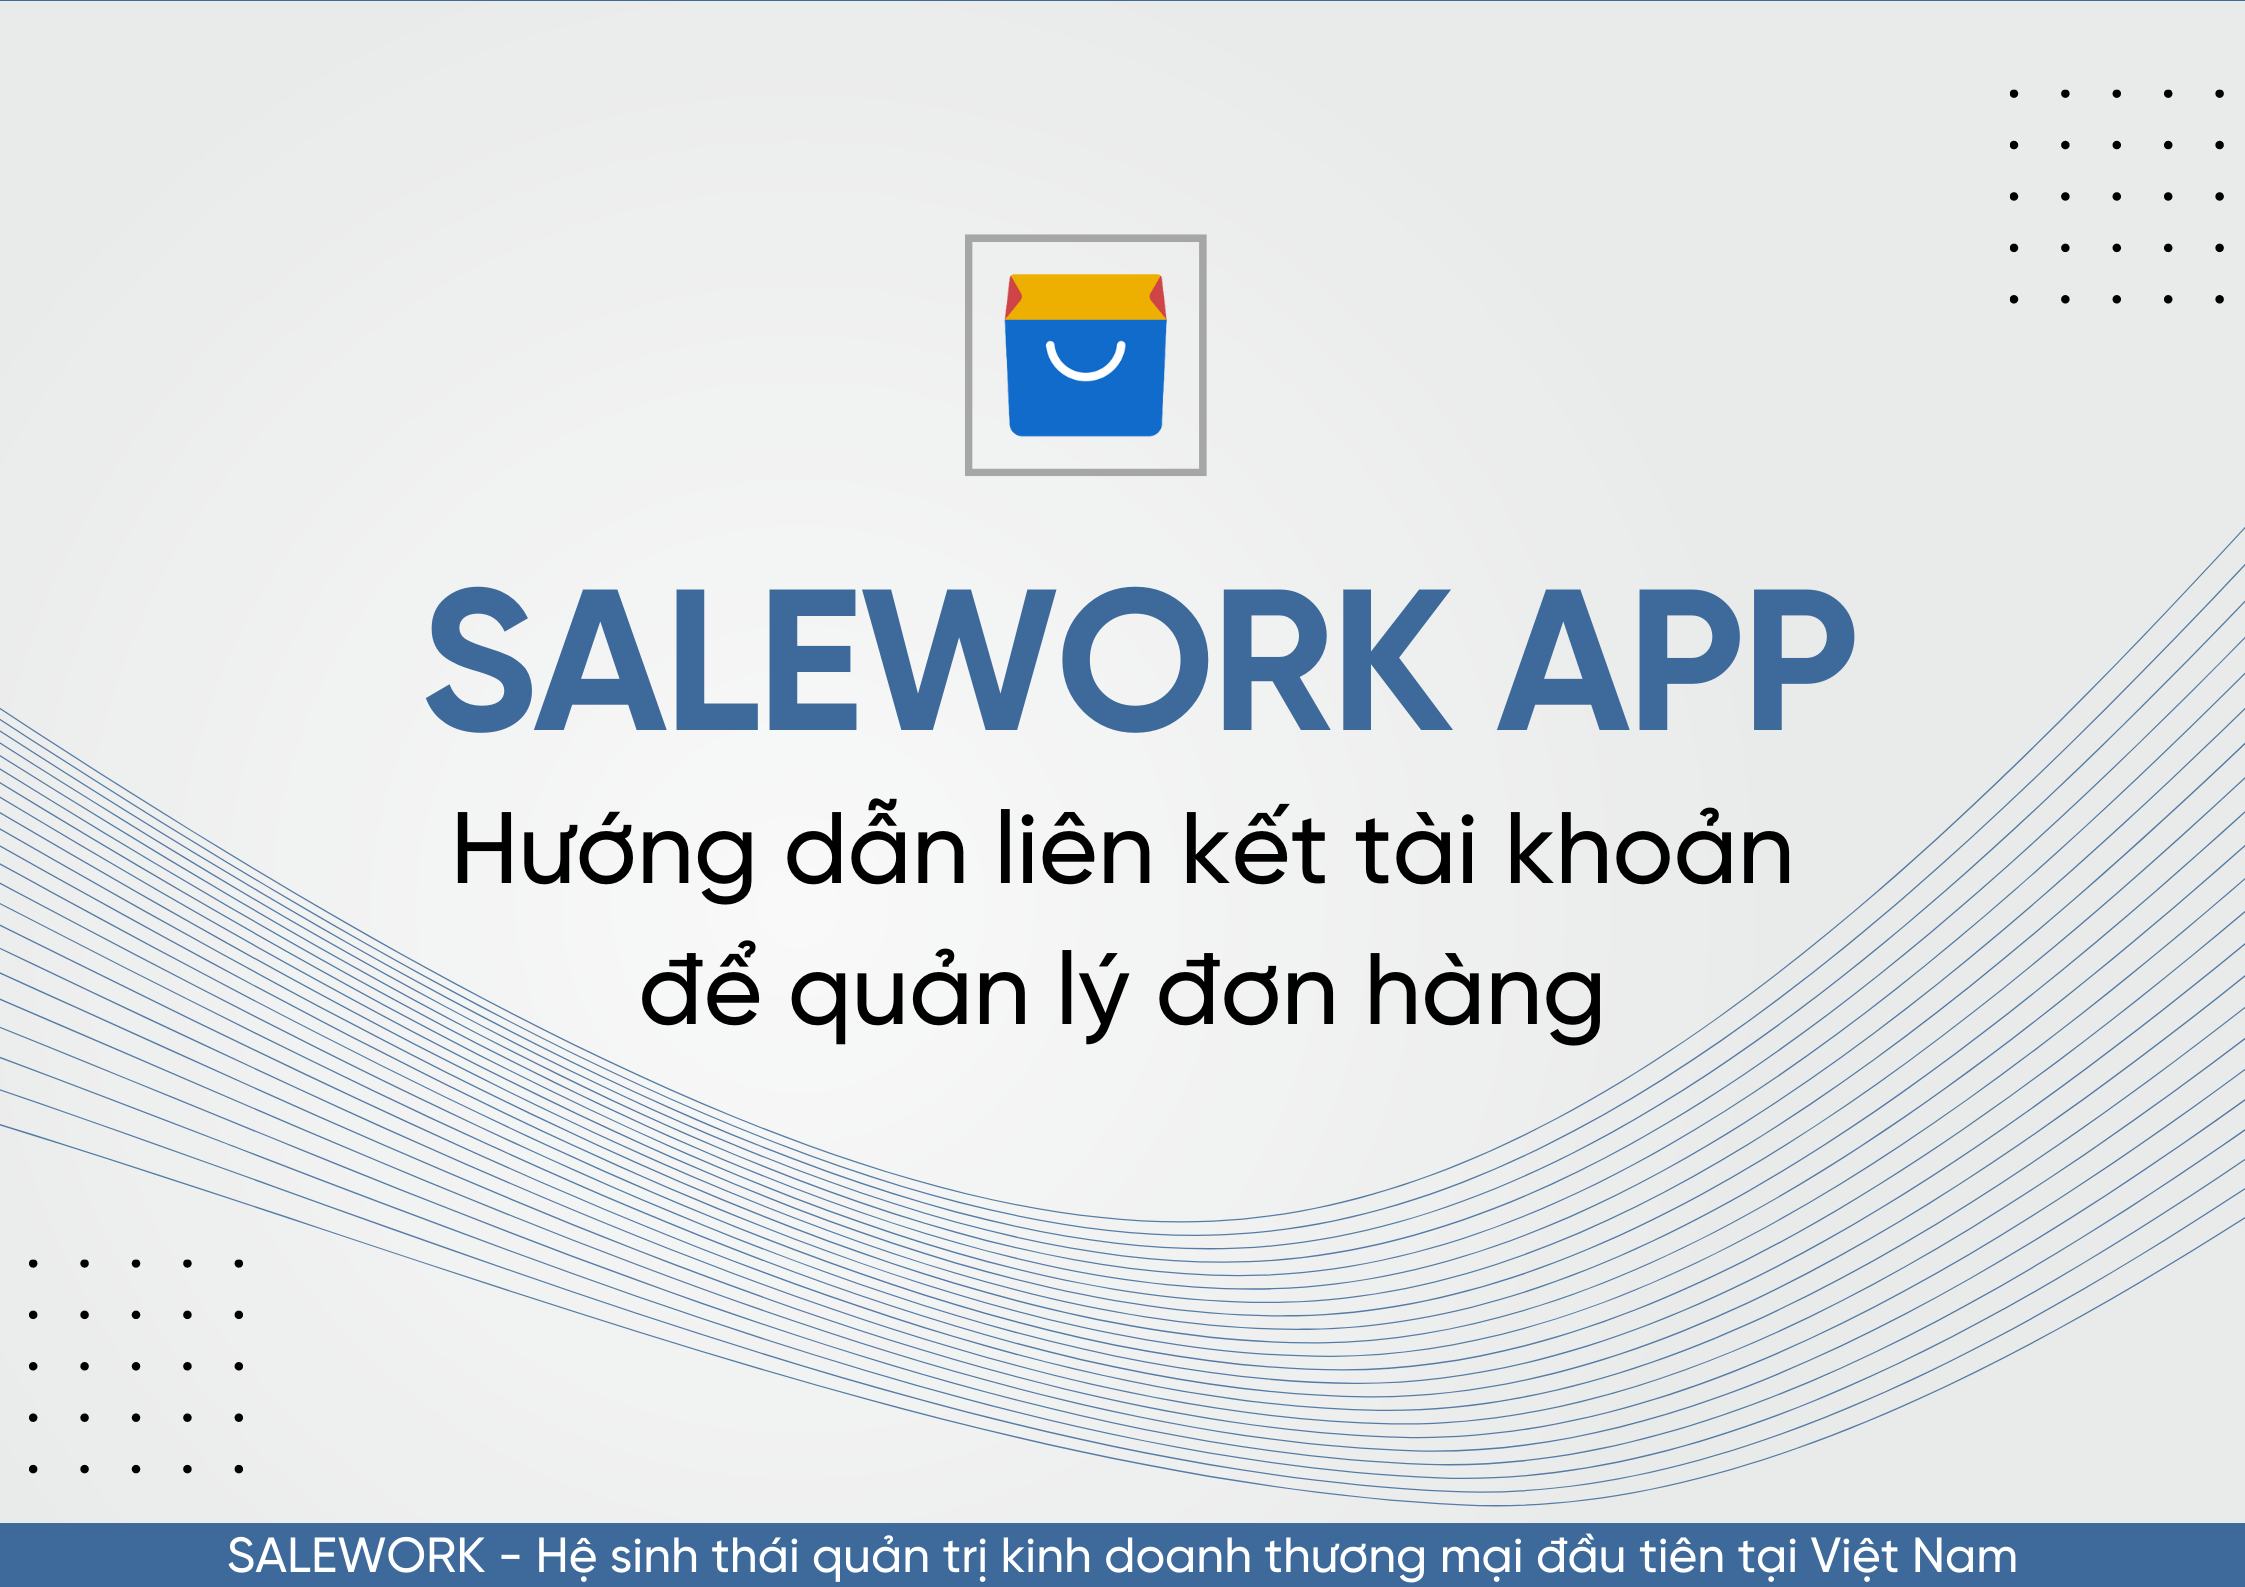 Hướng dẫn liên kết tài khoản để quản lý đơn hàng qua Salework Mobile - 67